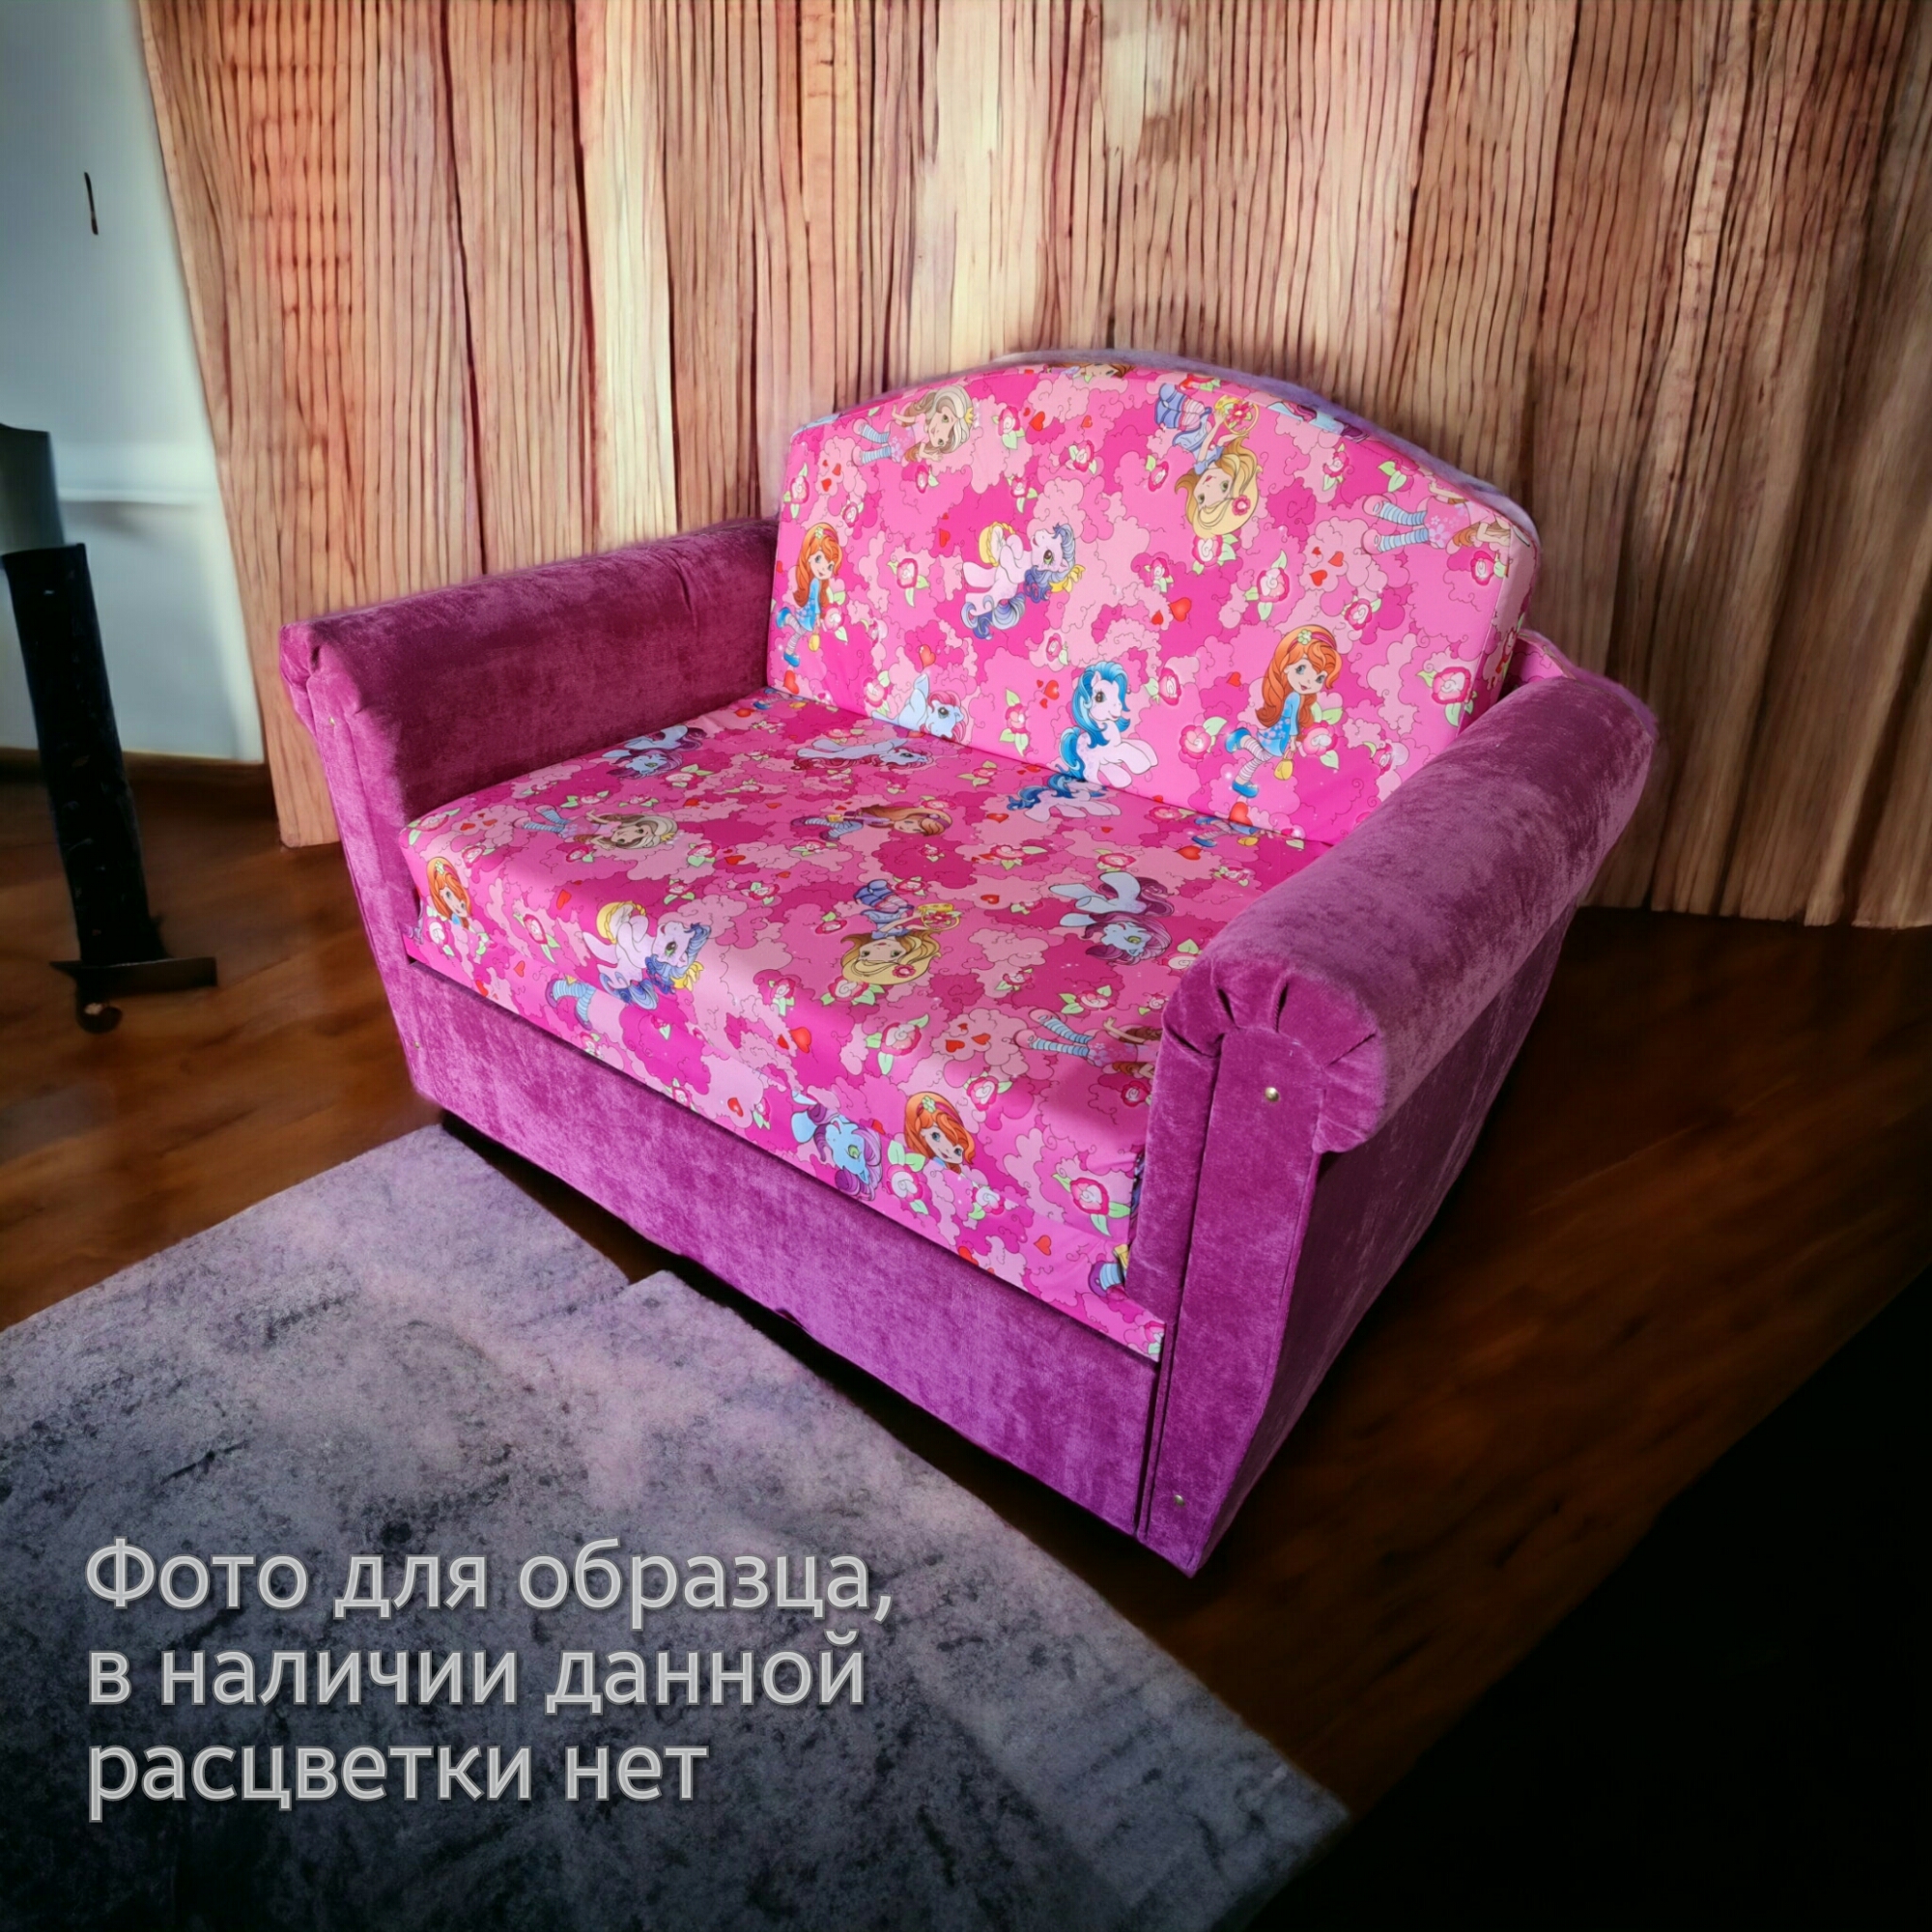 Фото 1. Купить недорогой диван по низкой цене от производителя можно у нас.